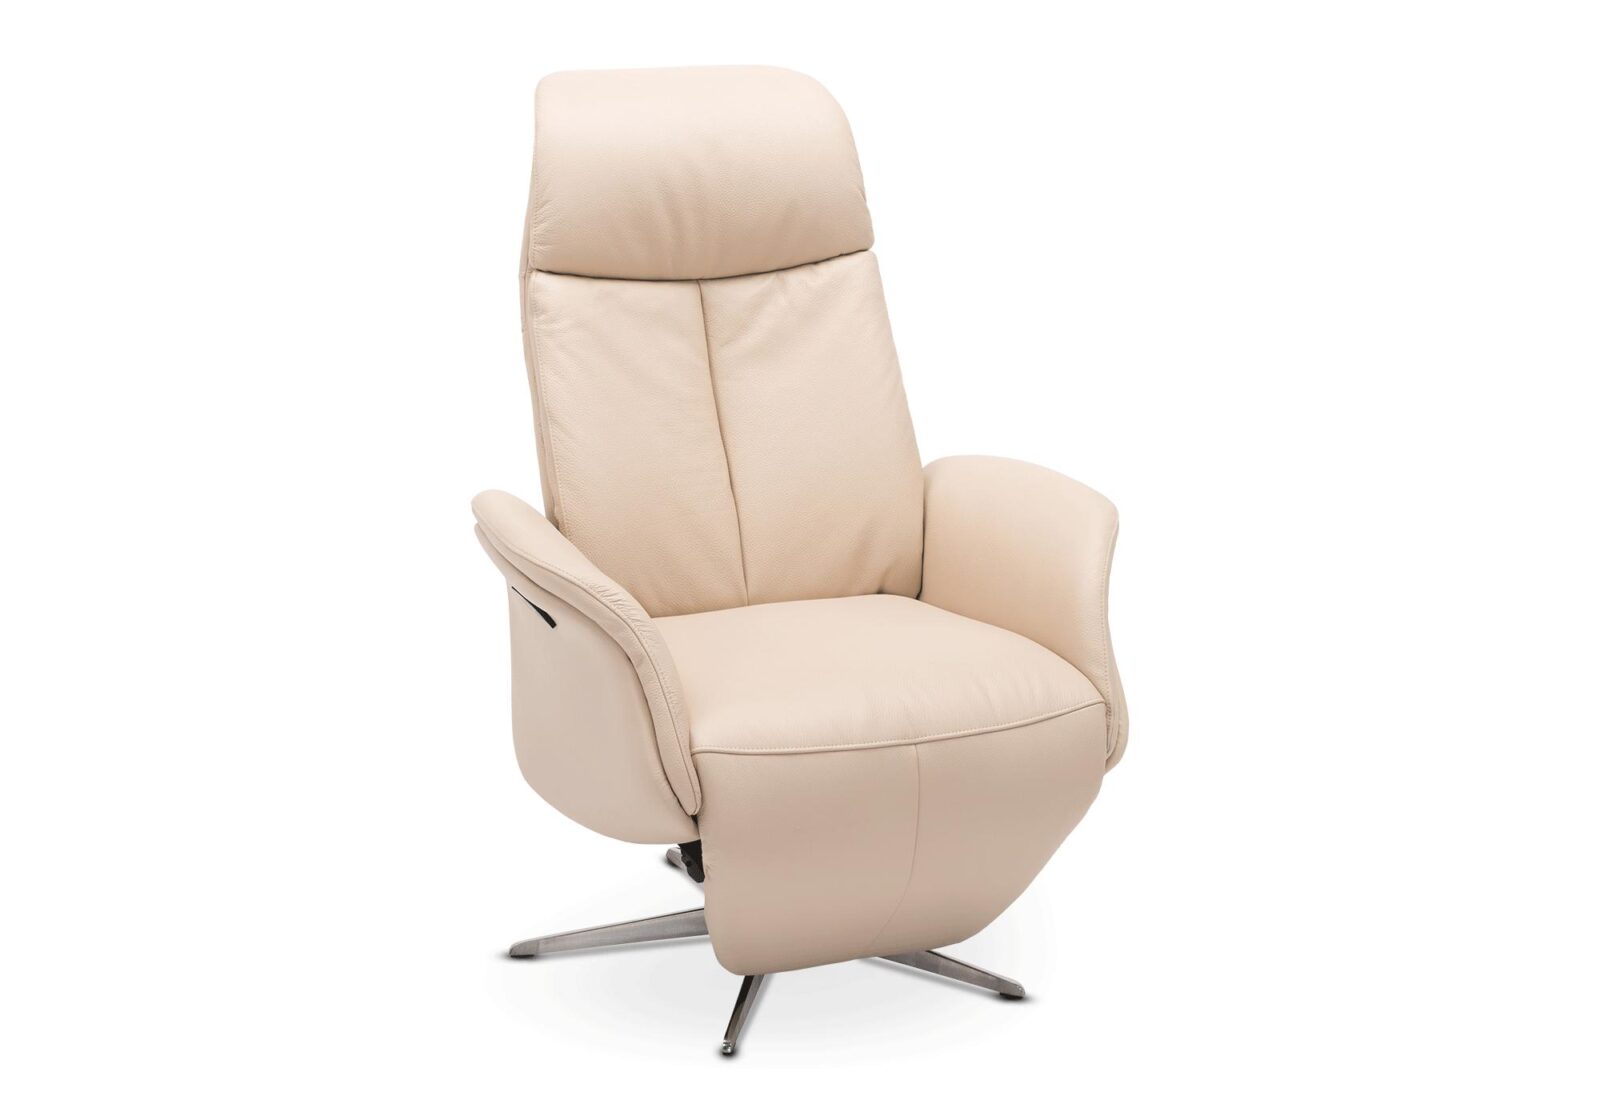 TV-Sessel Momo mit Motor. Bezug: Leder. Farbe: Beige. Erhältlich bei Möbel Gallati.